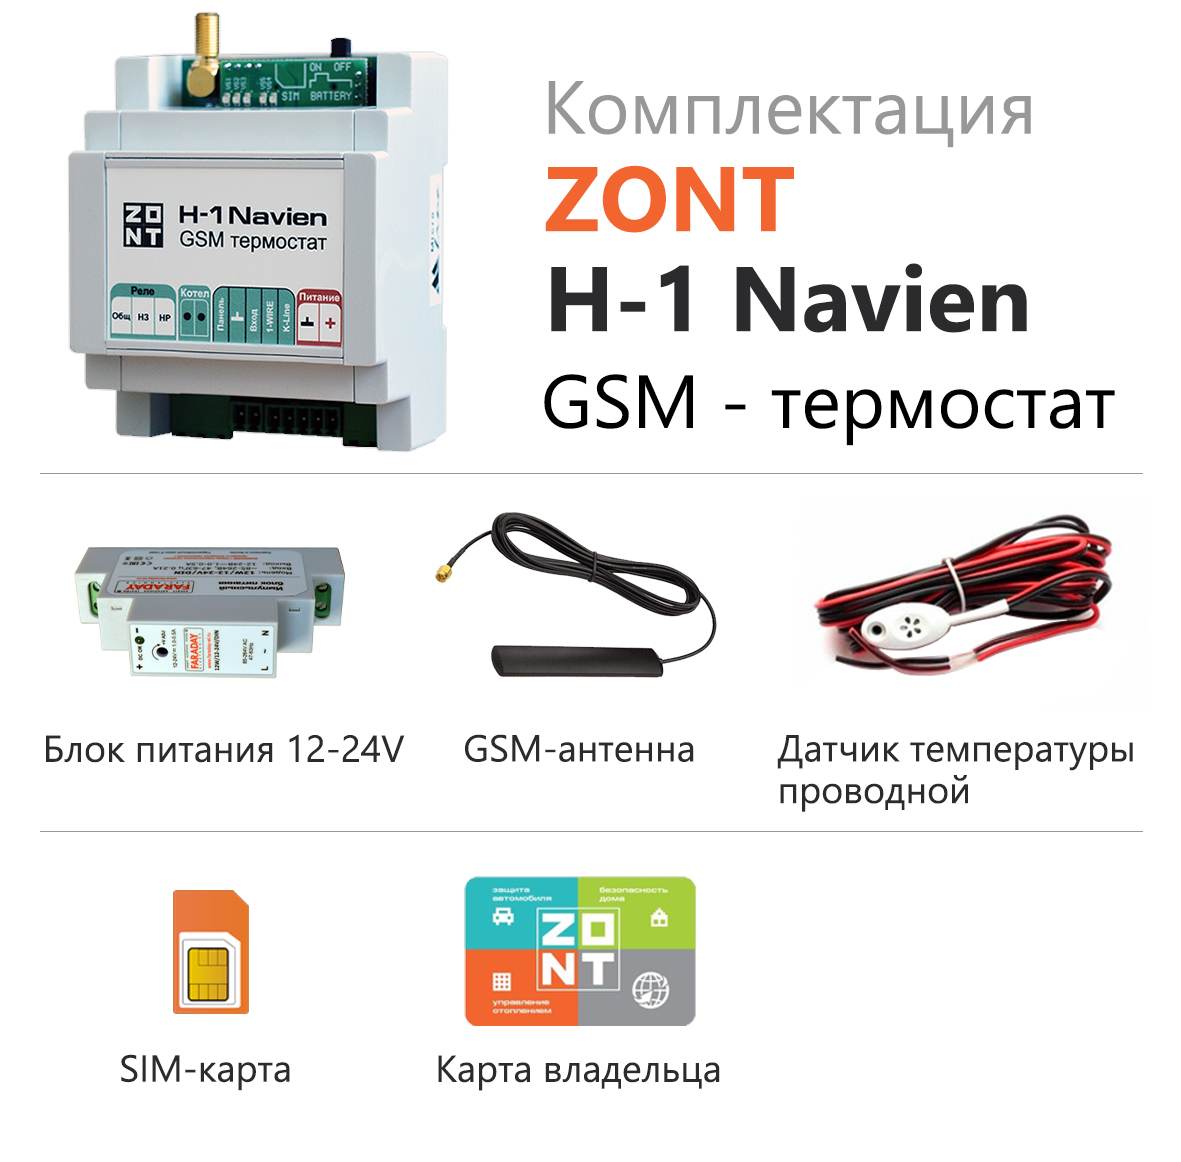 Zont h купить. Zont термостат h-1. Термостат Zont h-1v New (GSM, Wi-Fi, din). GSM-термостат Zont h-1v. GSM-термостат Zont h-1.